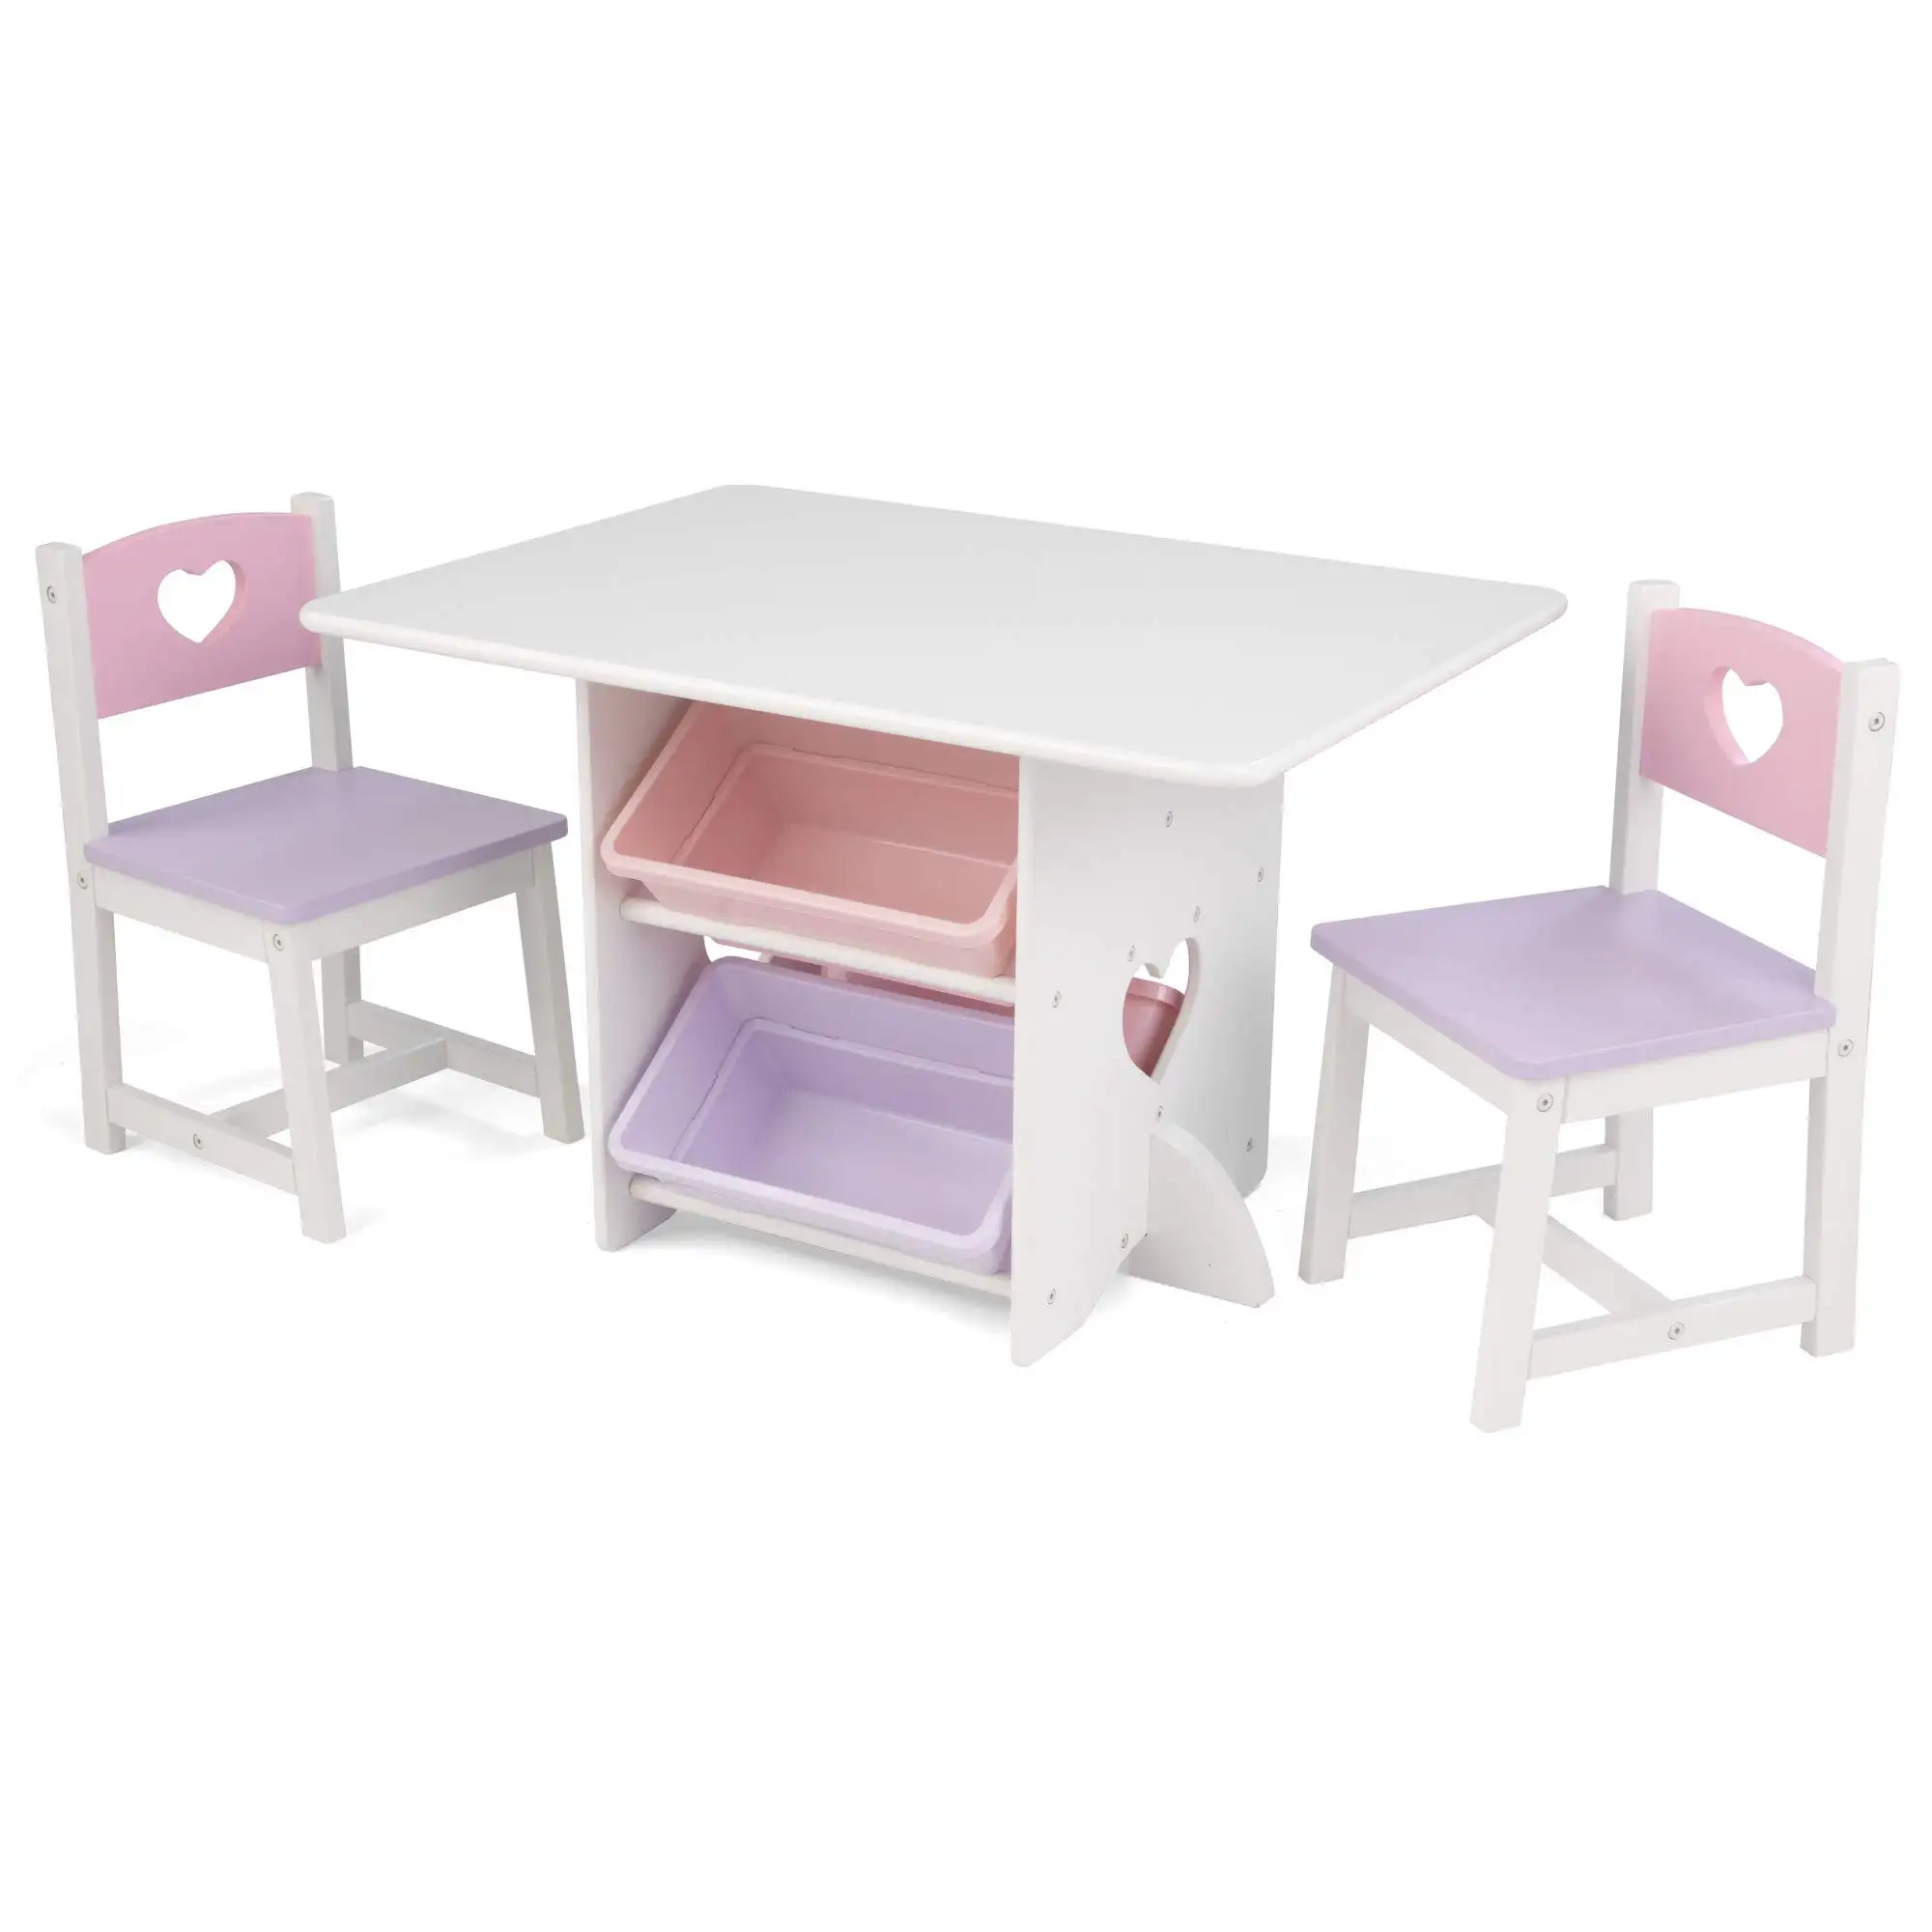 סט שולחן וכיסא מגולף בצורת לב מעץ לילדים למכירה חמה עם 4 פחי אחסון, מתנה לריהוט ילדים לגילאי 3-8